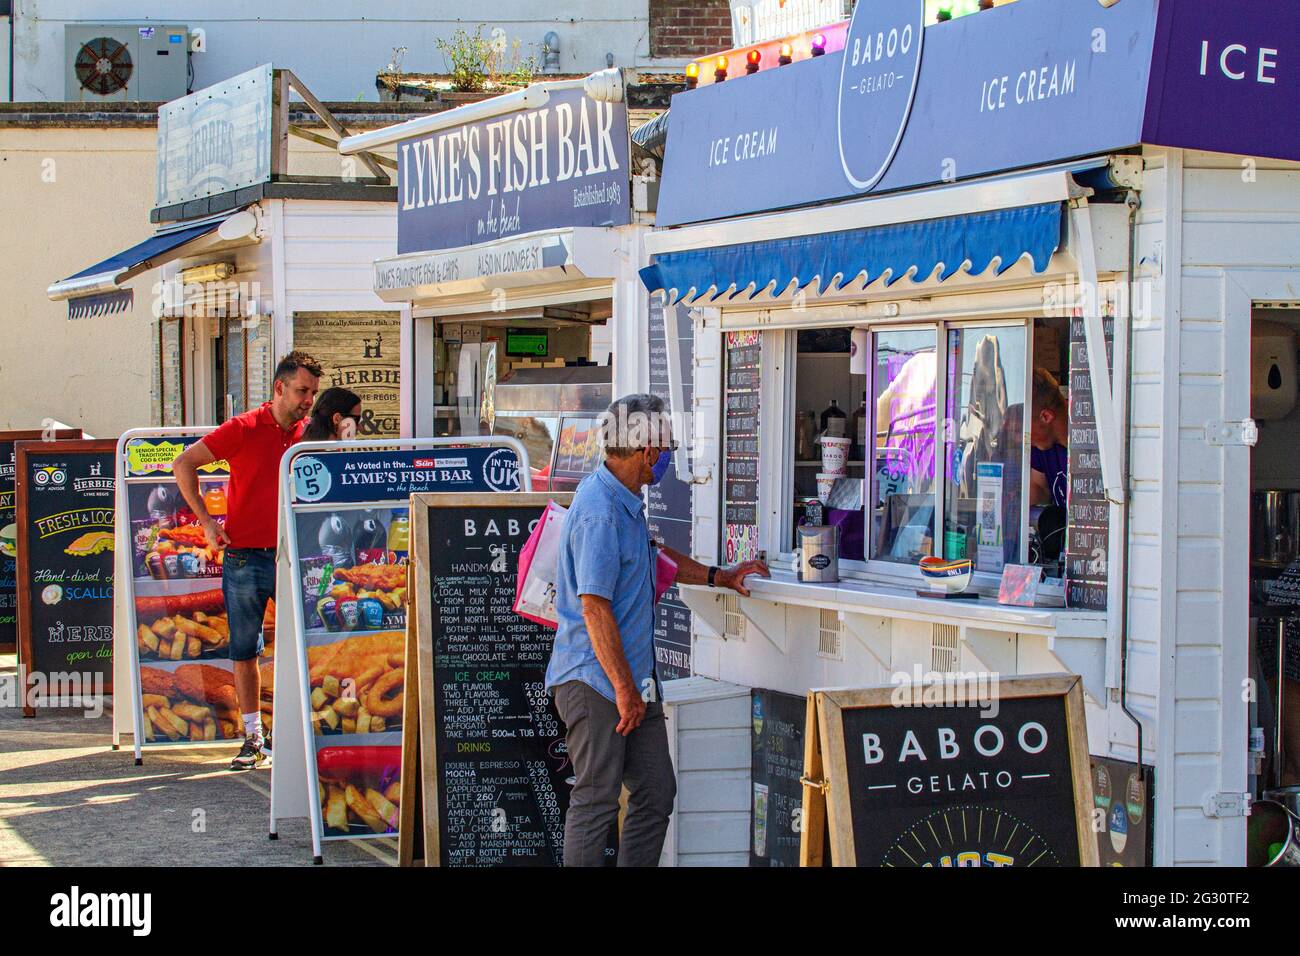 Les gens font la queue, socialement distancé, pour la glace et les Fish & chips, aux stands à emporter sur la plage de Lyme Regis, Jurassic Coast, Dorset, Angleterre Banque D'Images